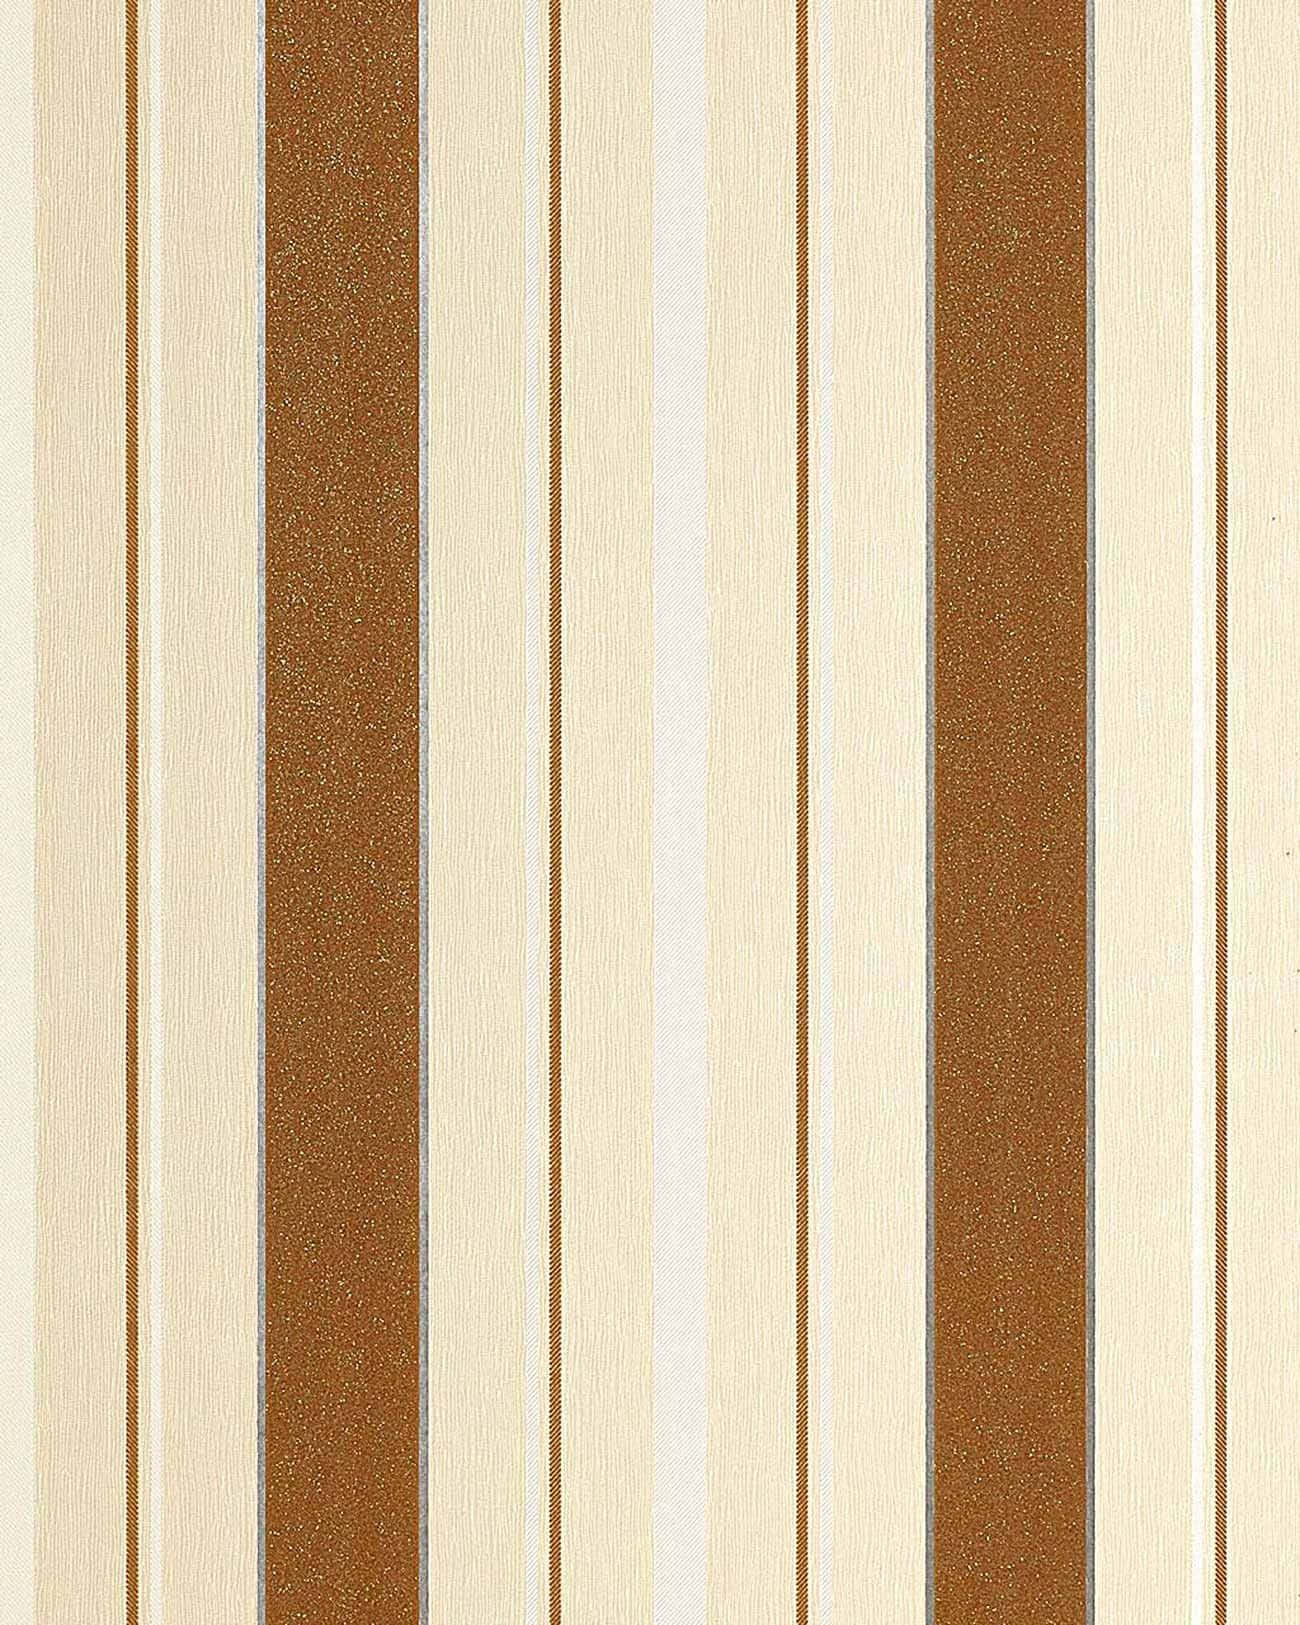 Glat kontrast mellem brun og hvid Wallpaper